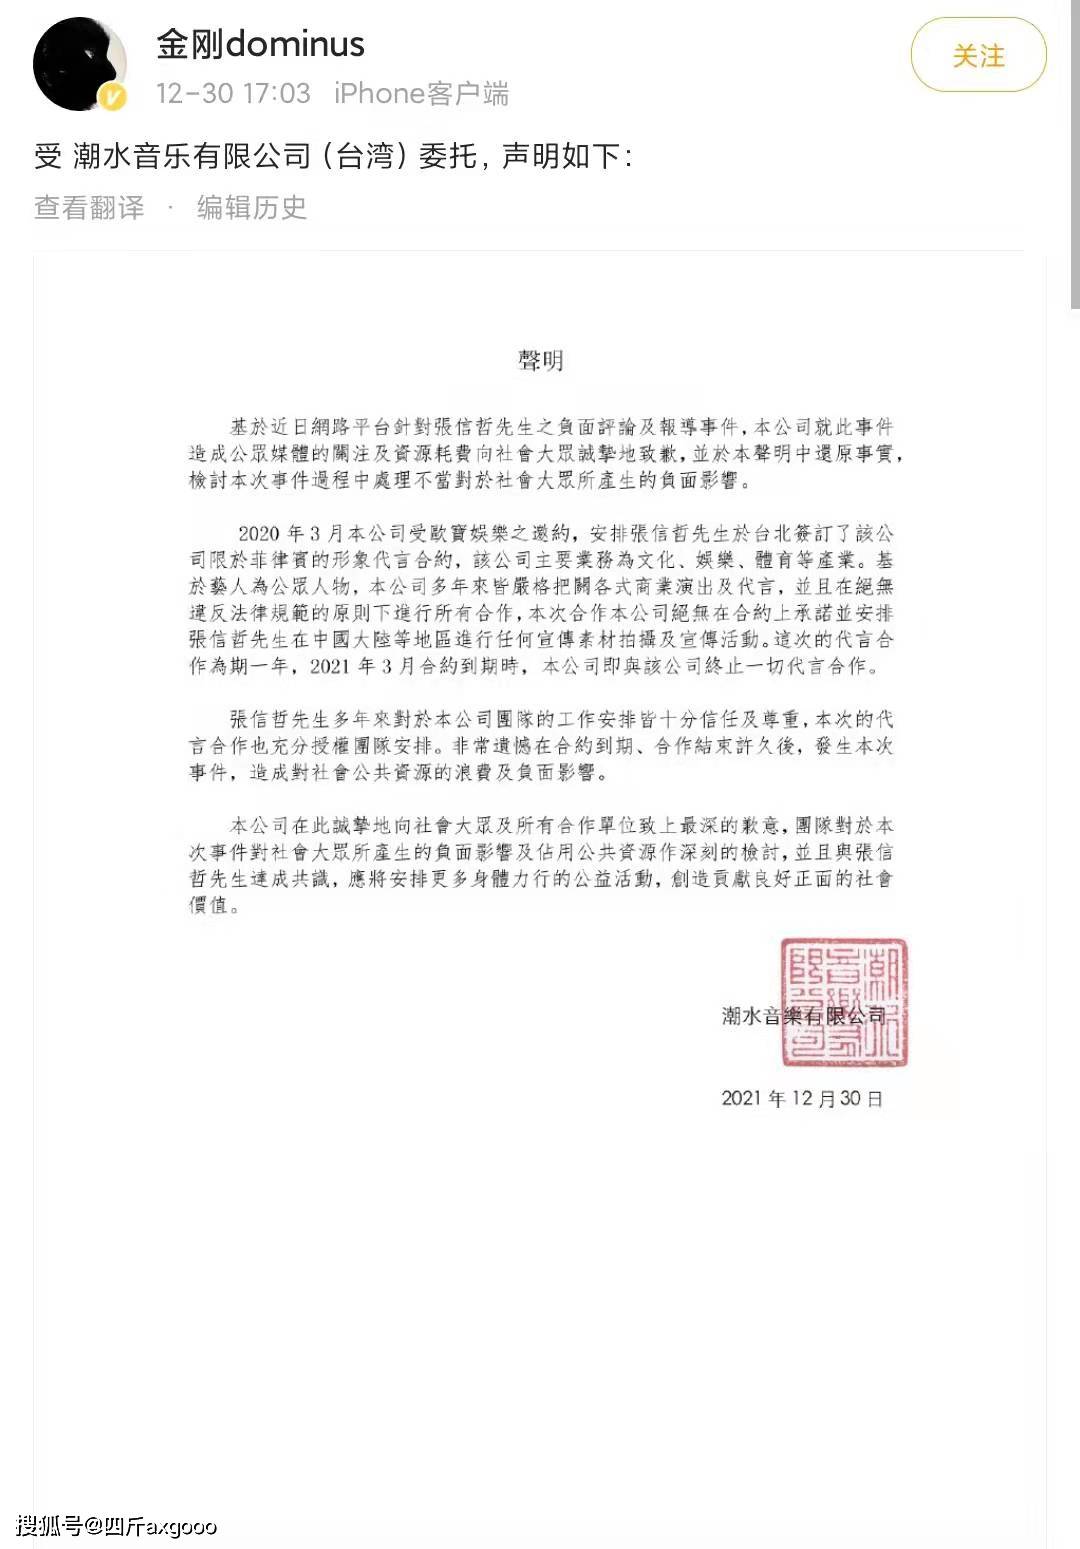 刘强东发声明道歉 刘强东前妻身份背景遭扒